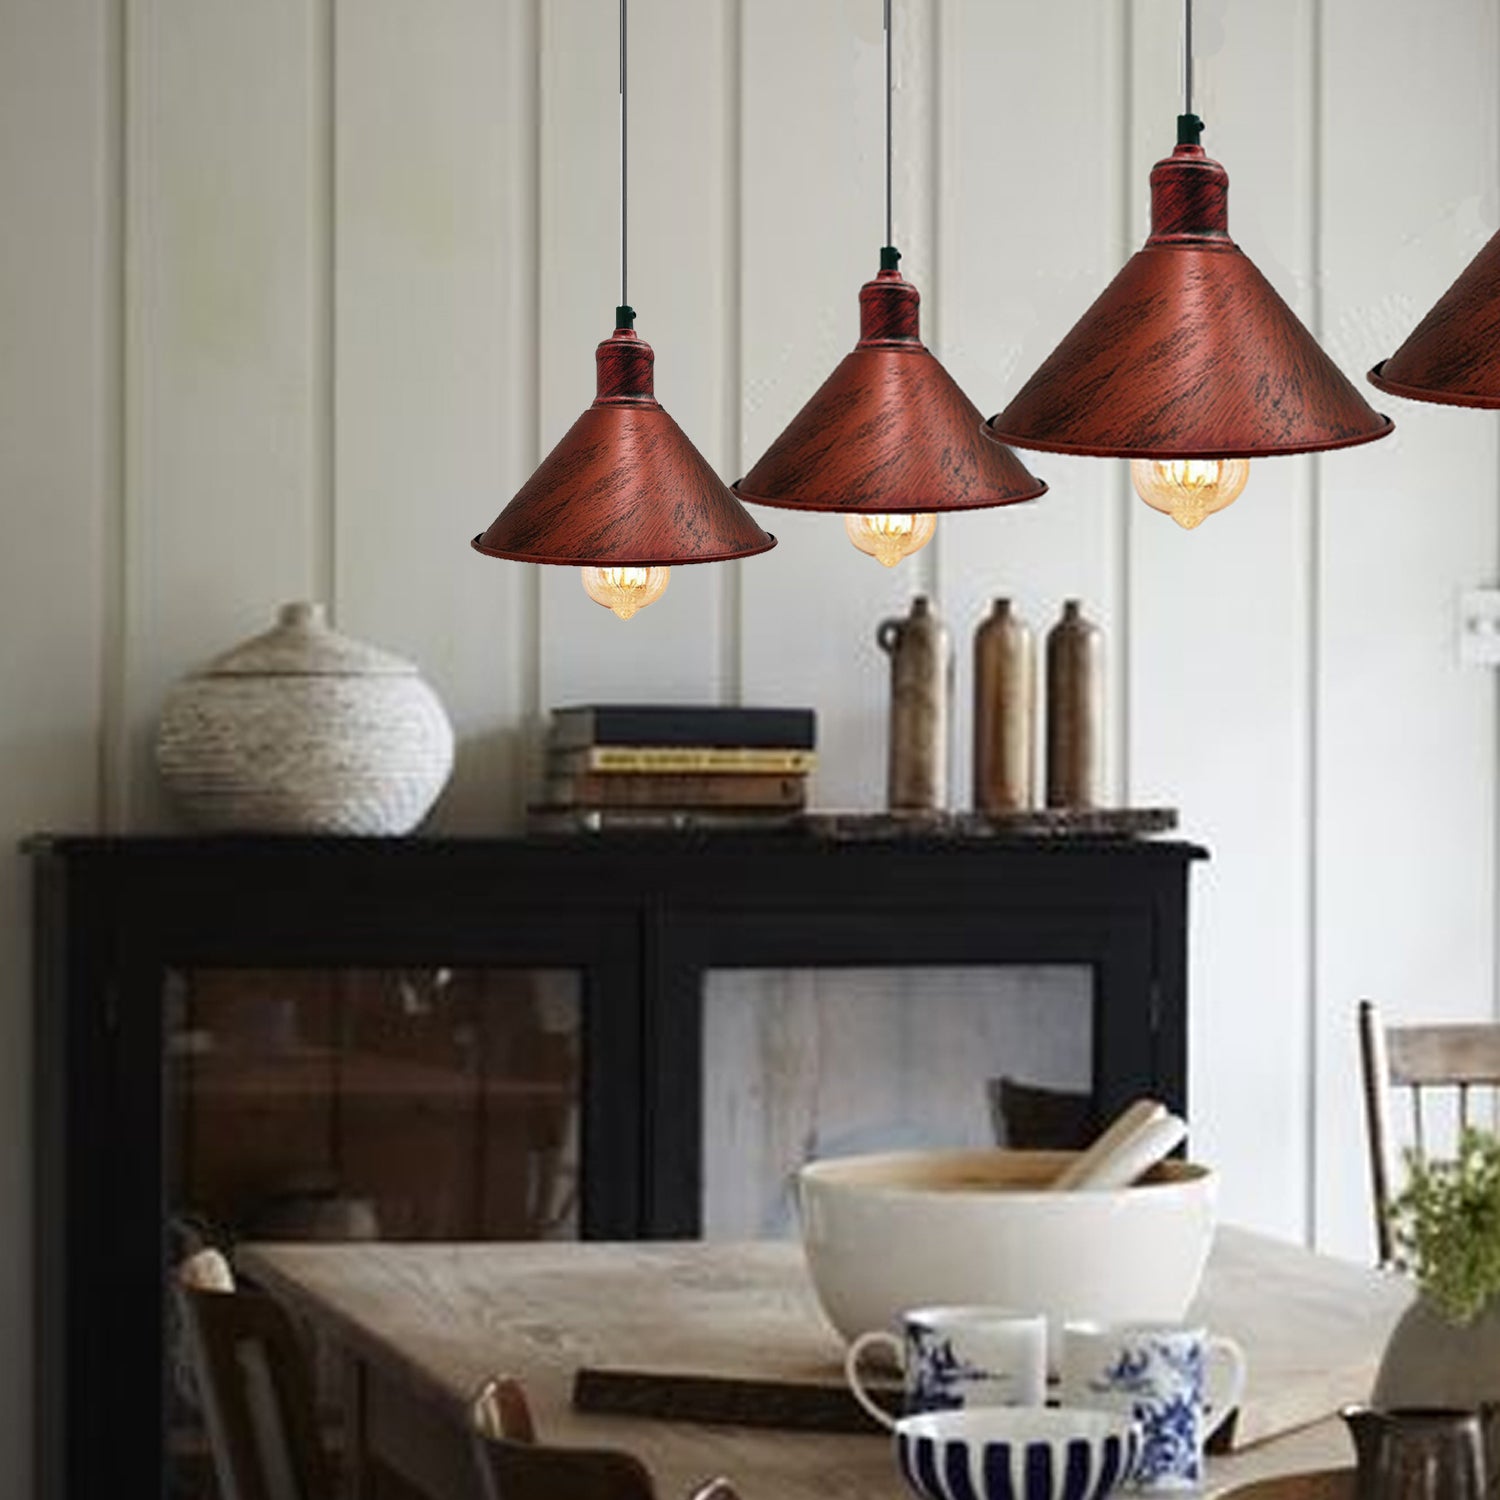 Rustikales Rot -Hänge Lampe Wohn Ess Zimmer Tisch Beleuchtung Küchen Pendel Leuchte Decken Licht